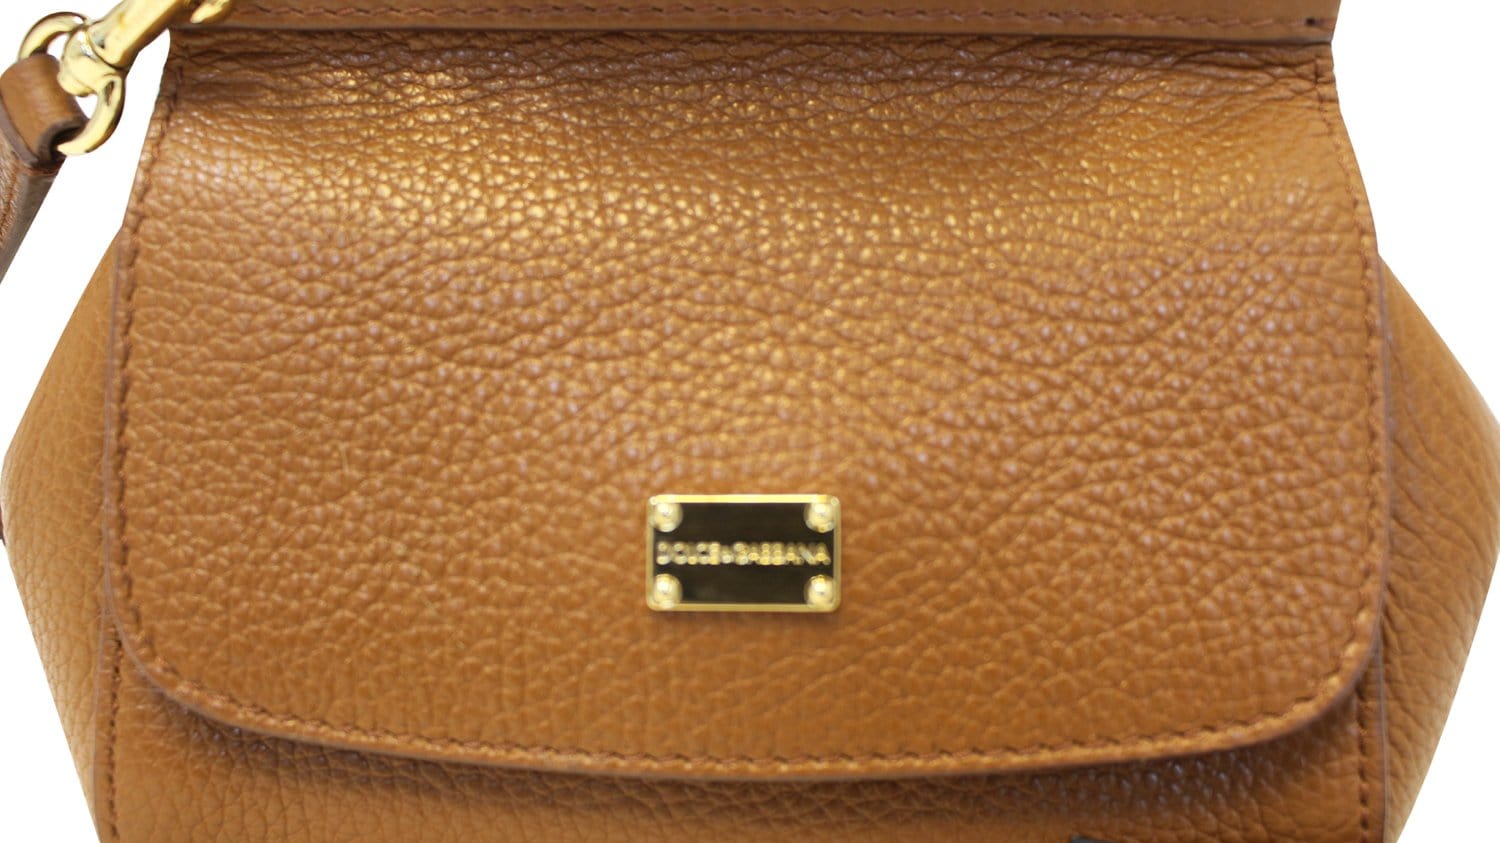 Dolce & Gabbana 'sicily' Shoulder Bag in Brown